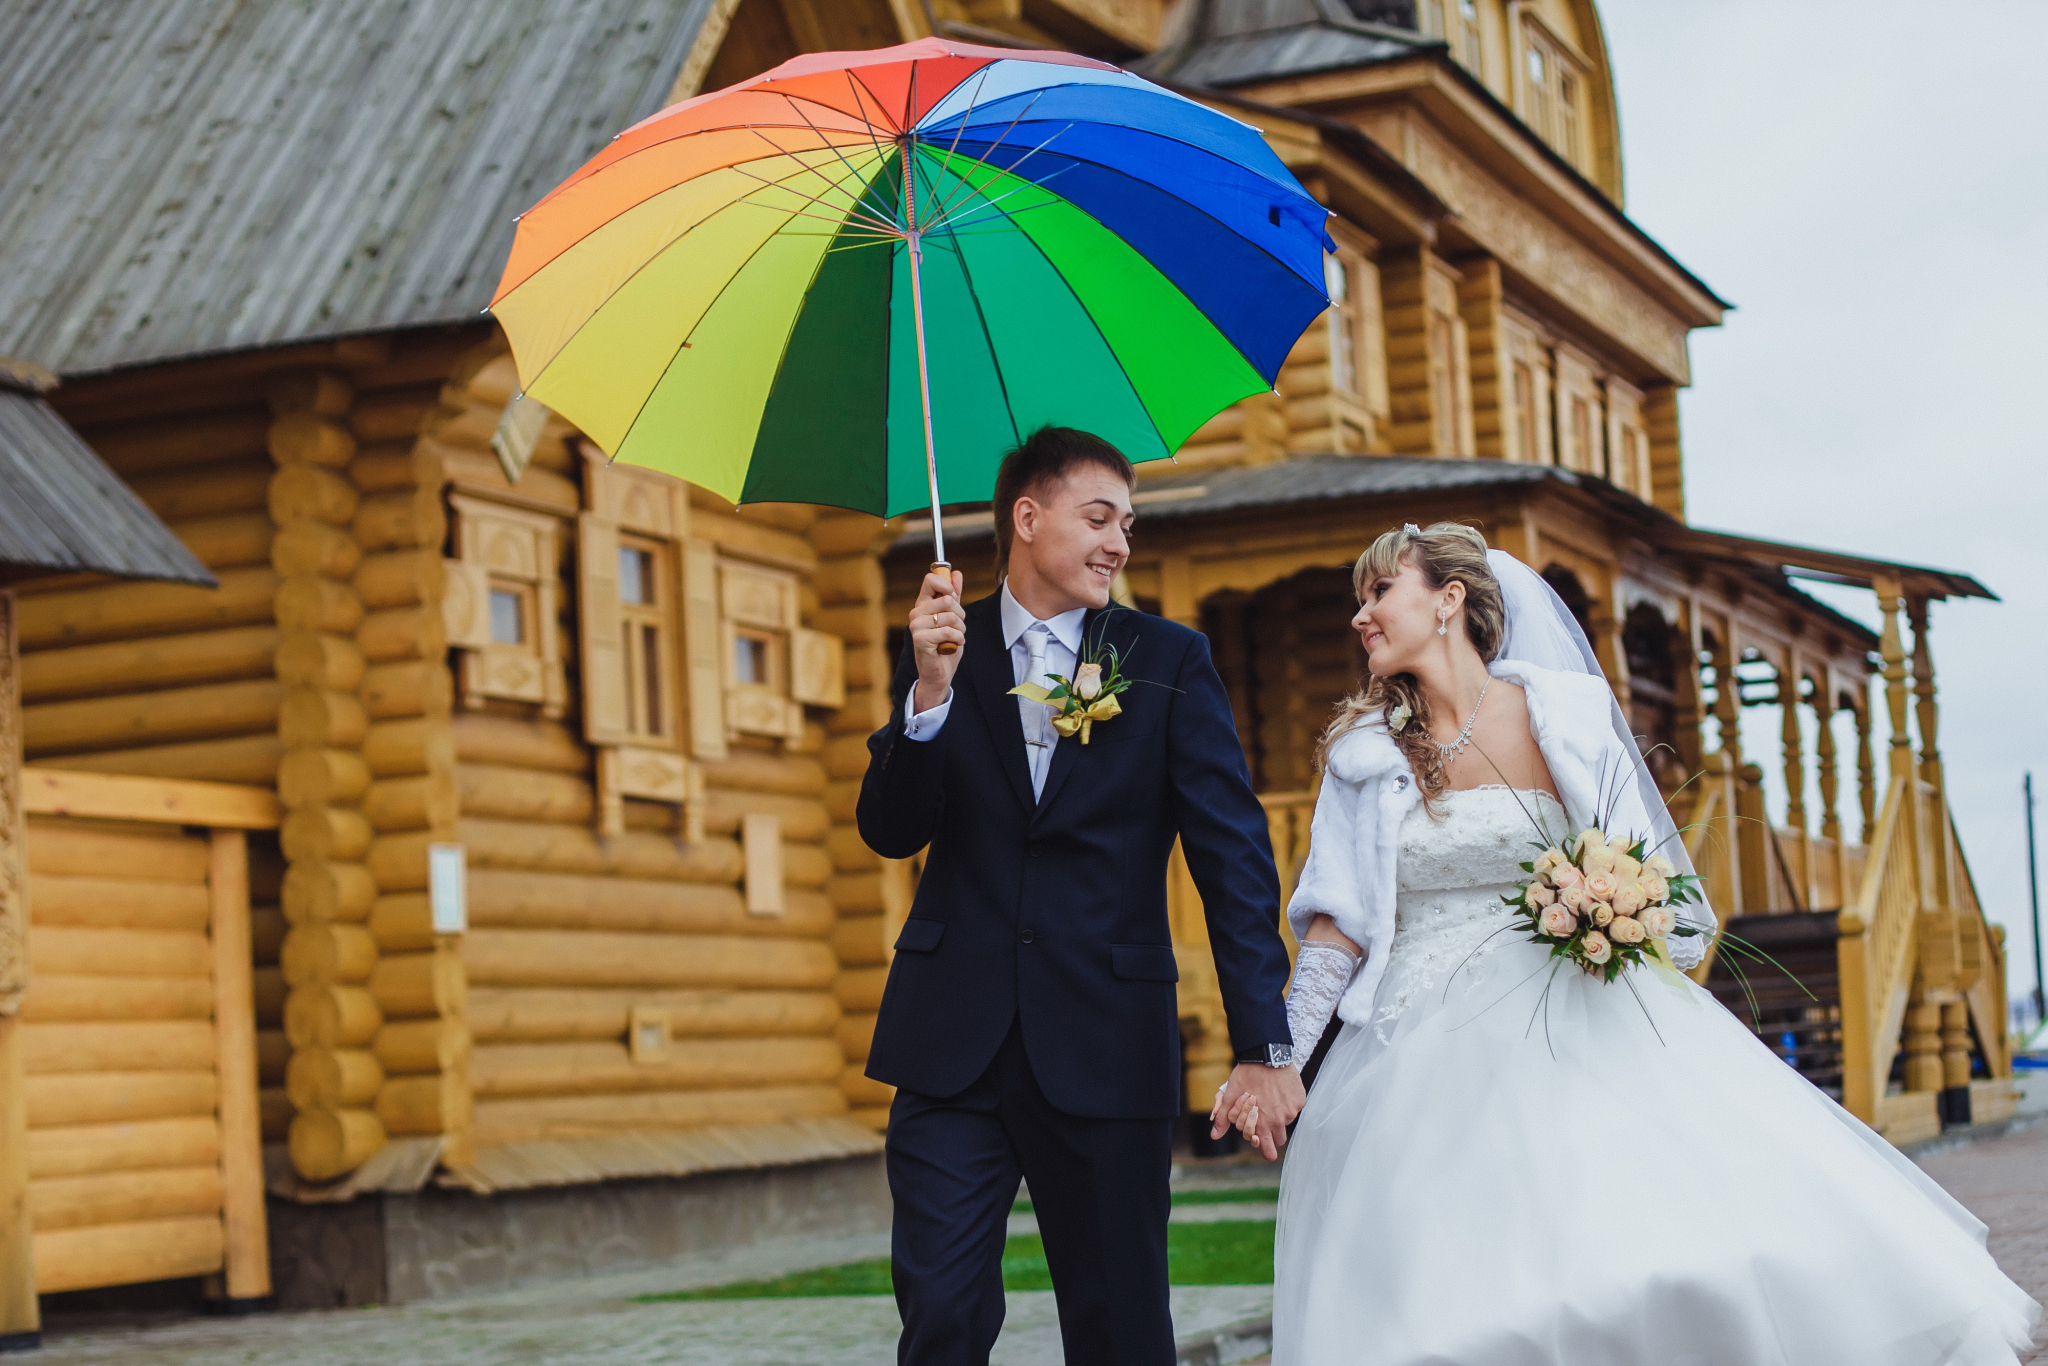 Конкурс свадебных фотографий "Горько": голосование открыто 